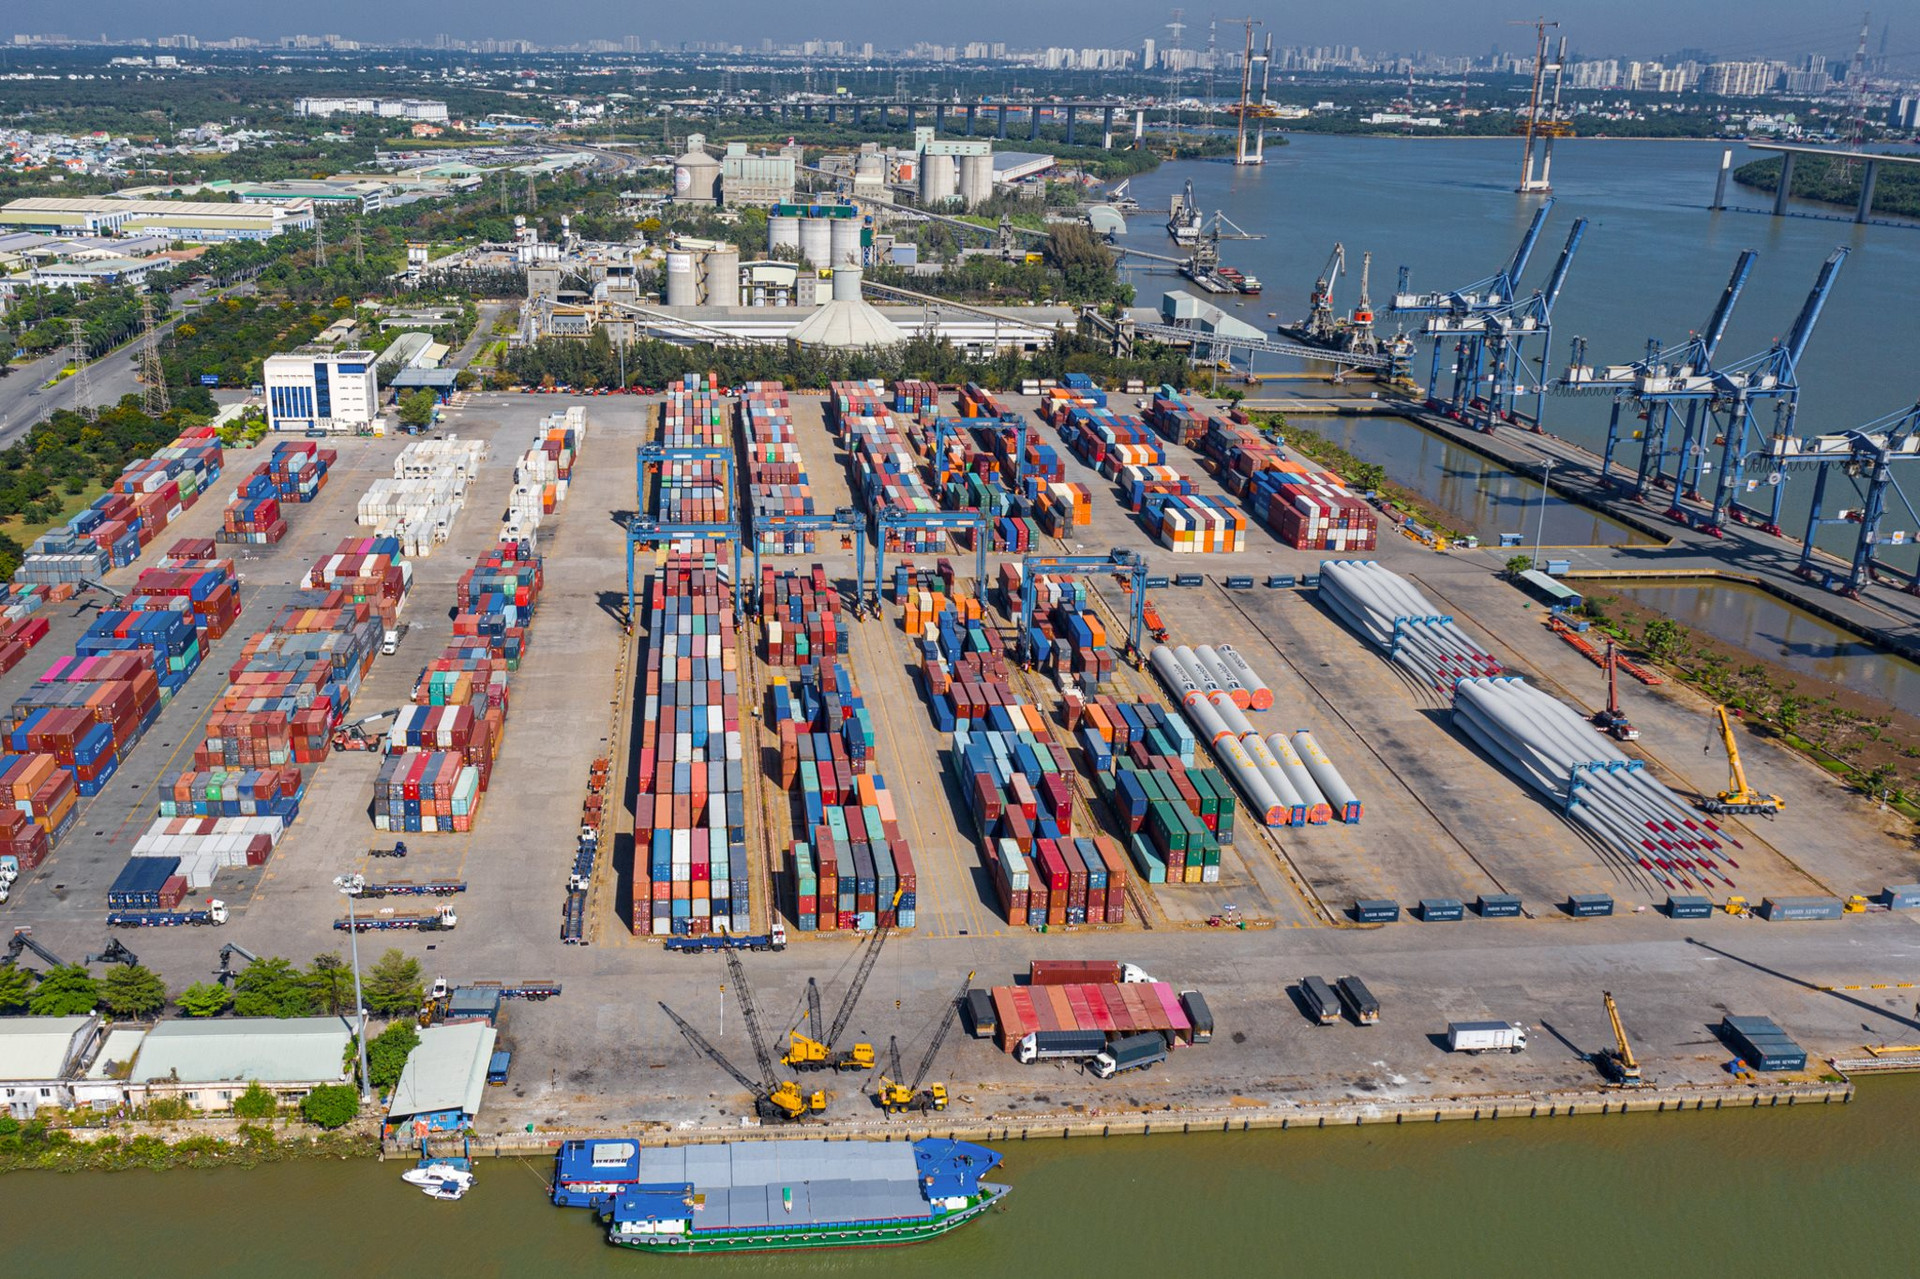 ‏K‏‏hu công nghiệp ‏‏có đến 3 cảng quốc tế, rộng nhất ‏‏TP. HCM - Ảnh 1.